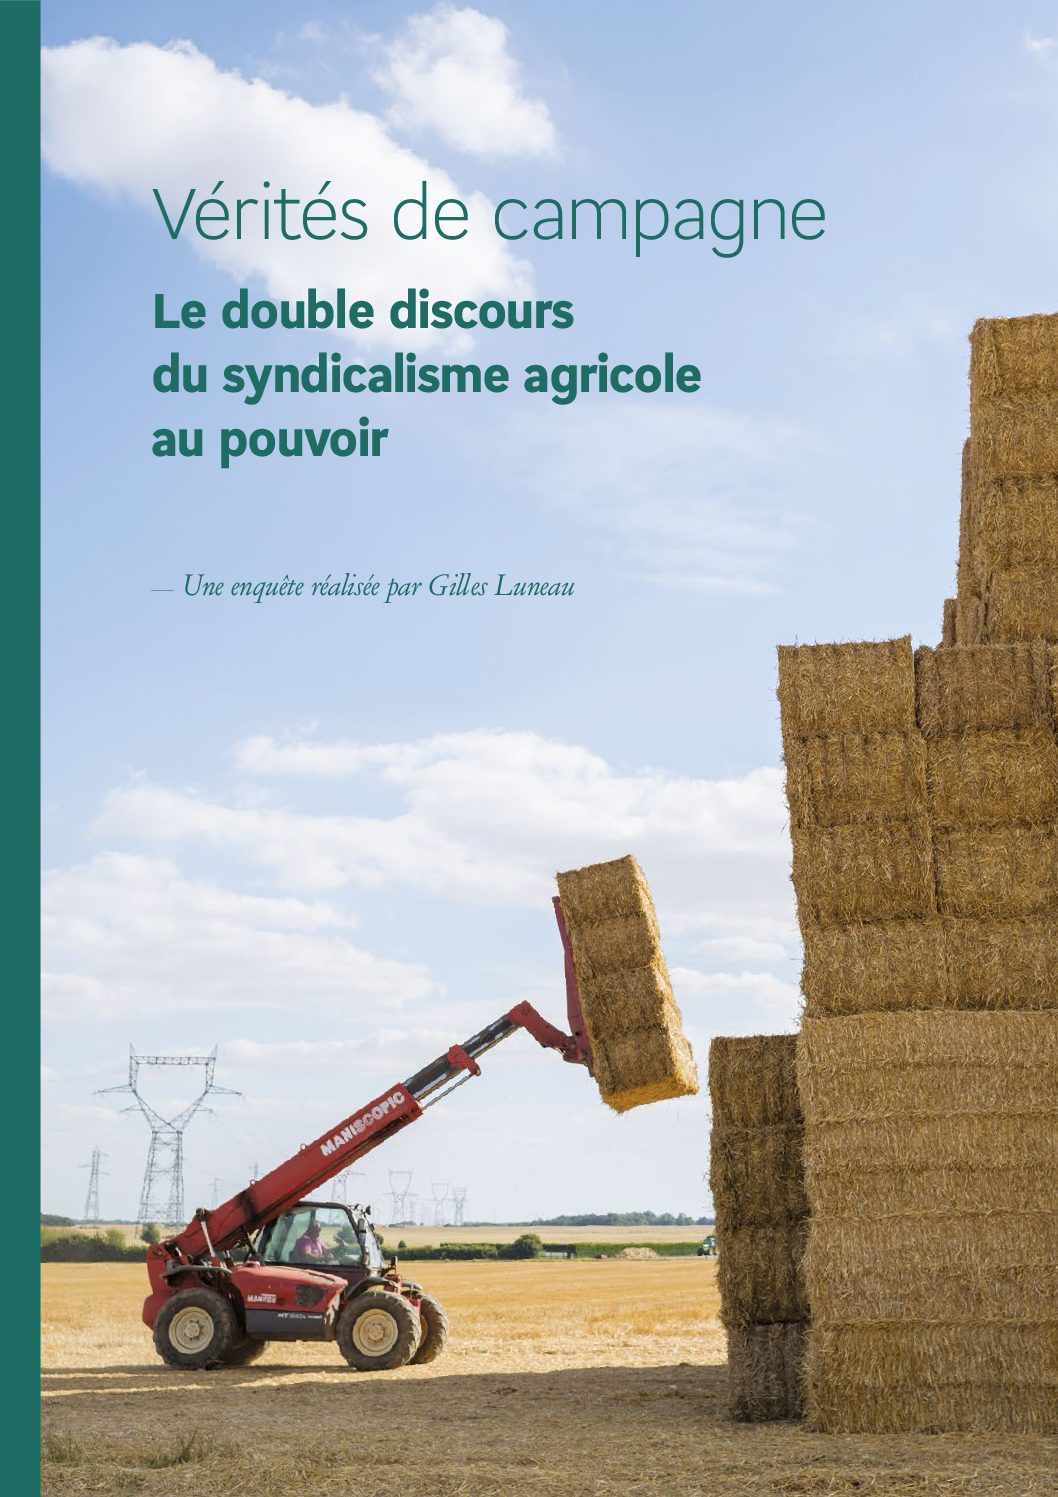 [ENQUÊTE] Vérités de campagne – Le double discours du syndicalisme agricole au pouvoir